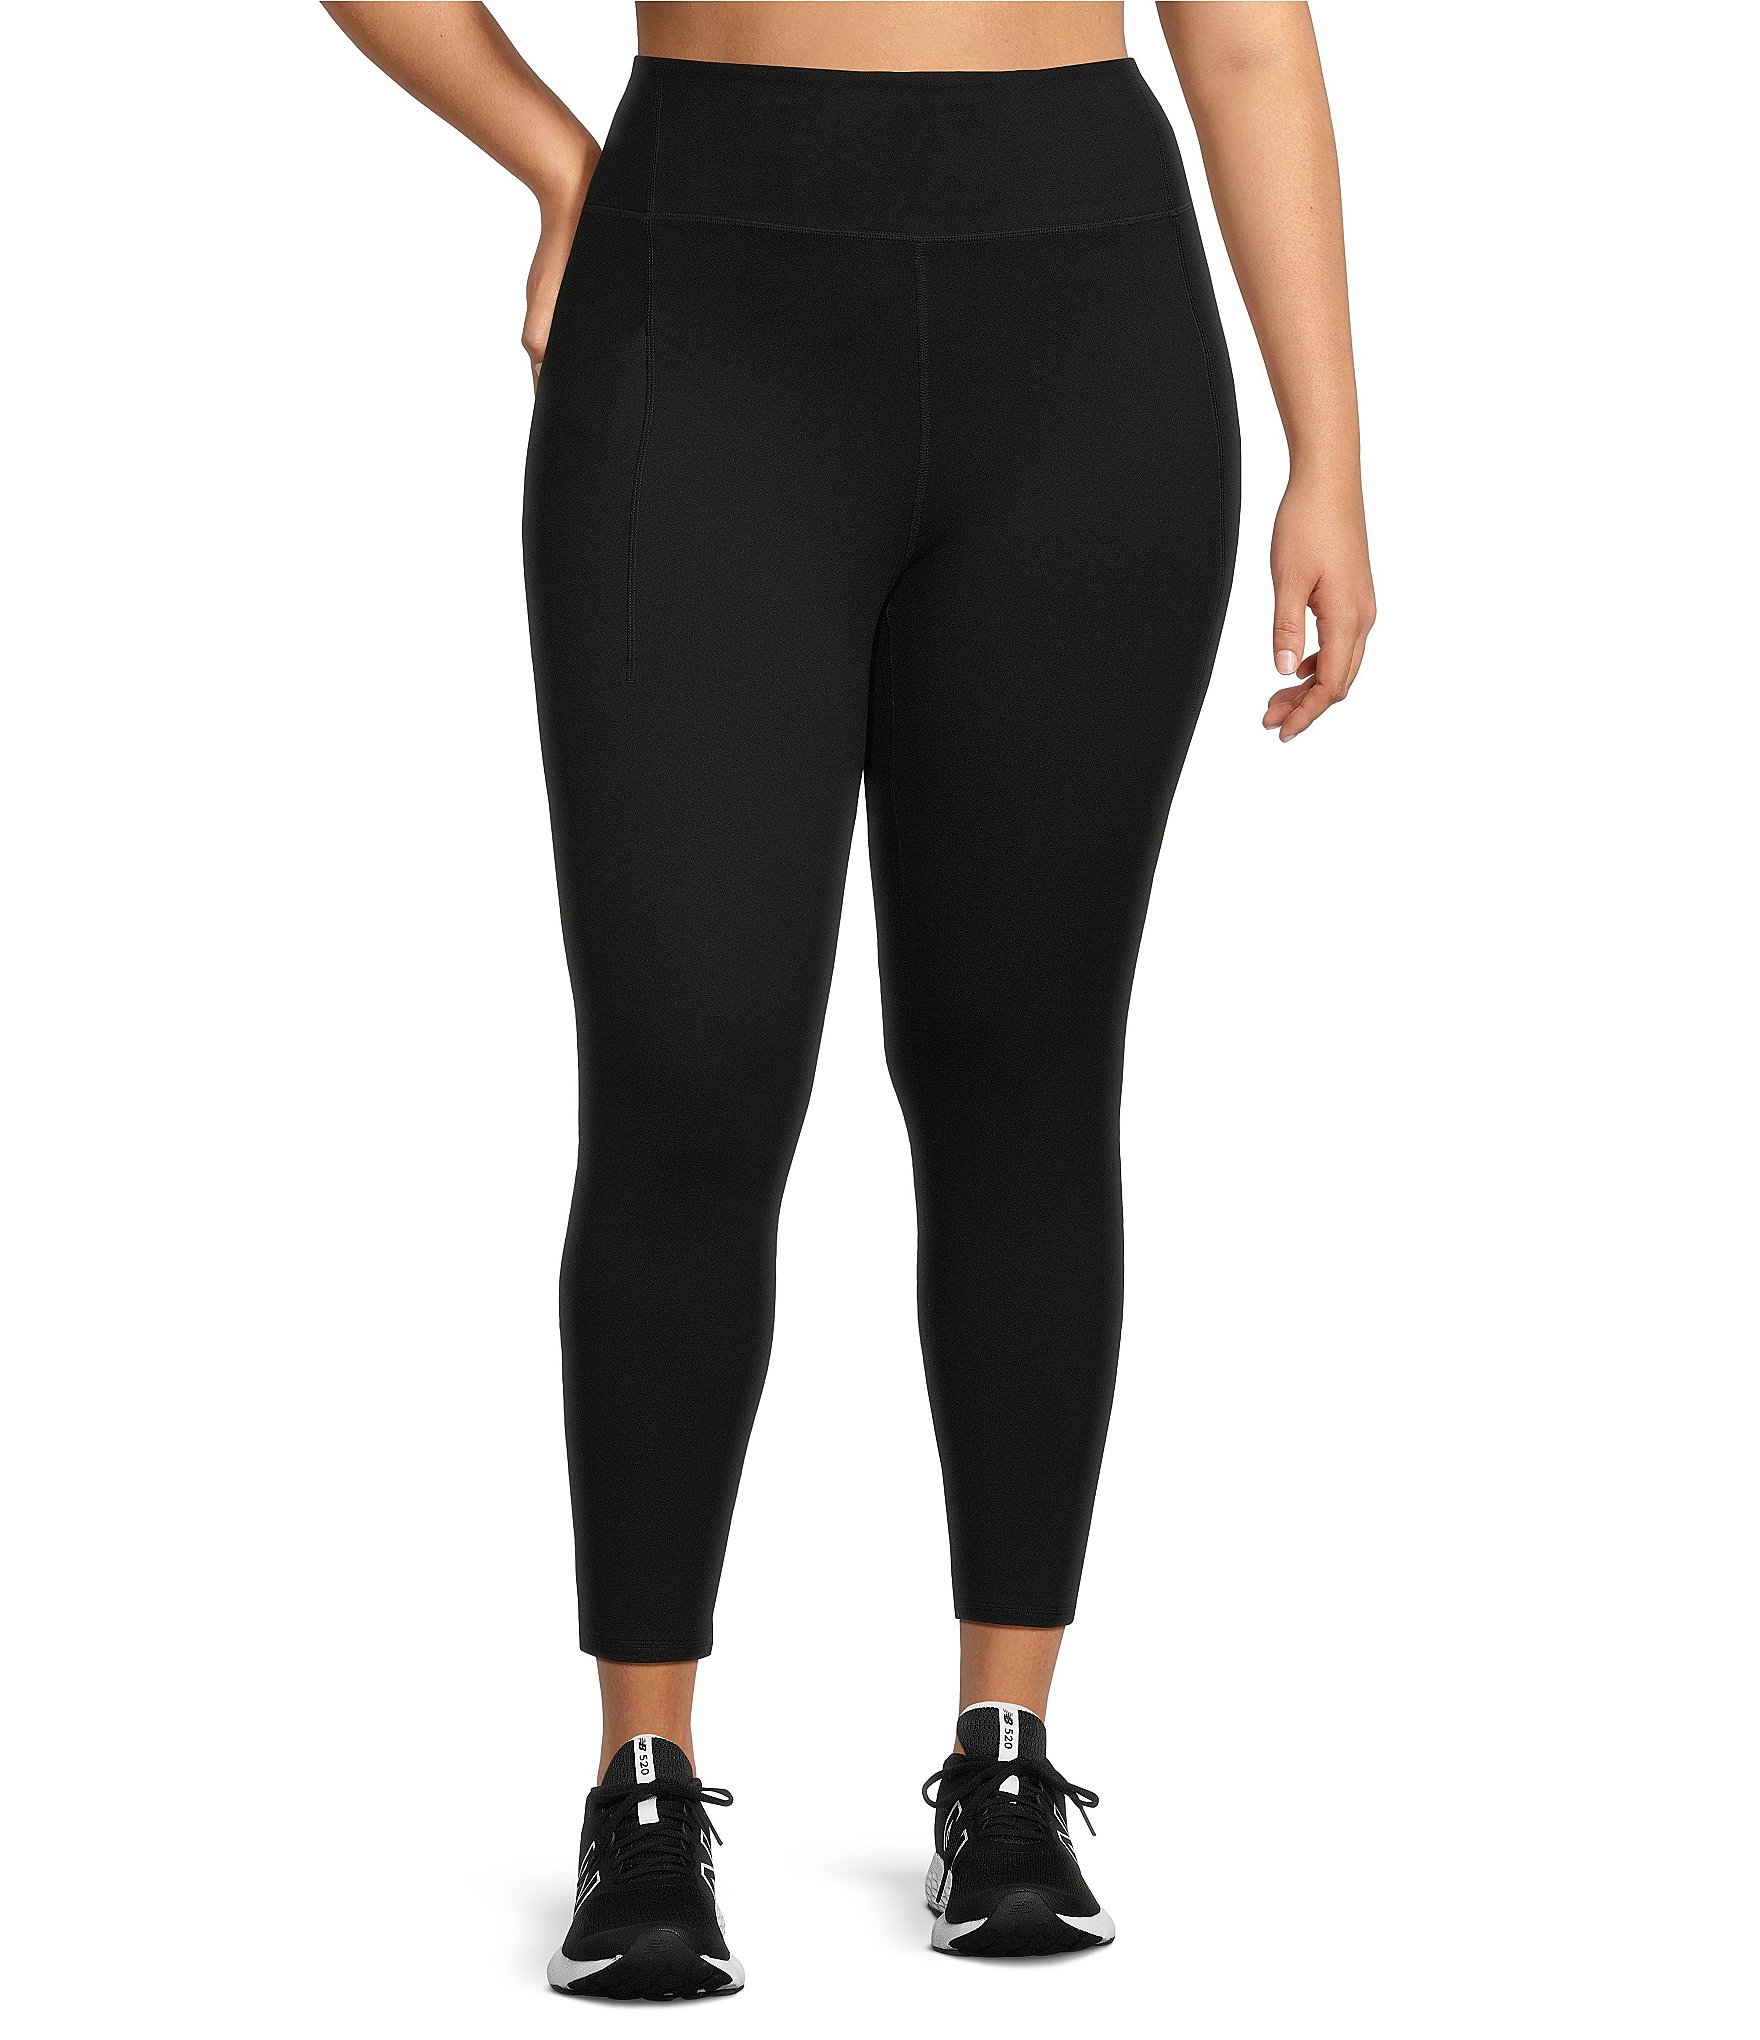 2x: Women's Plus-Size Activewear & Workout Clothes